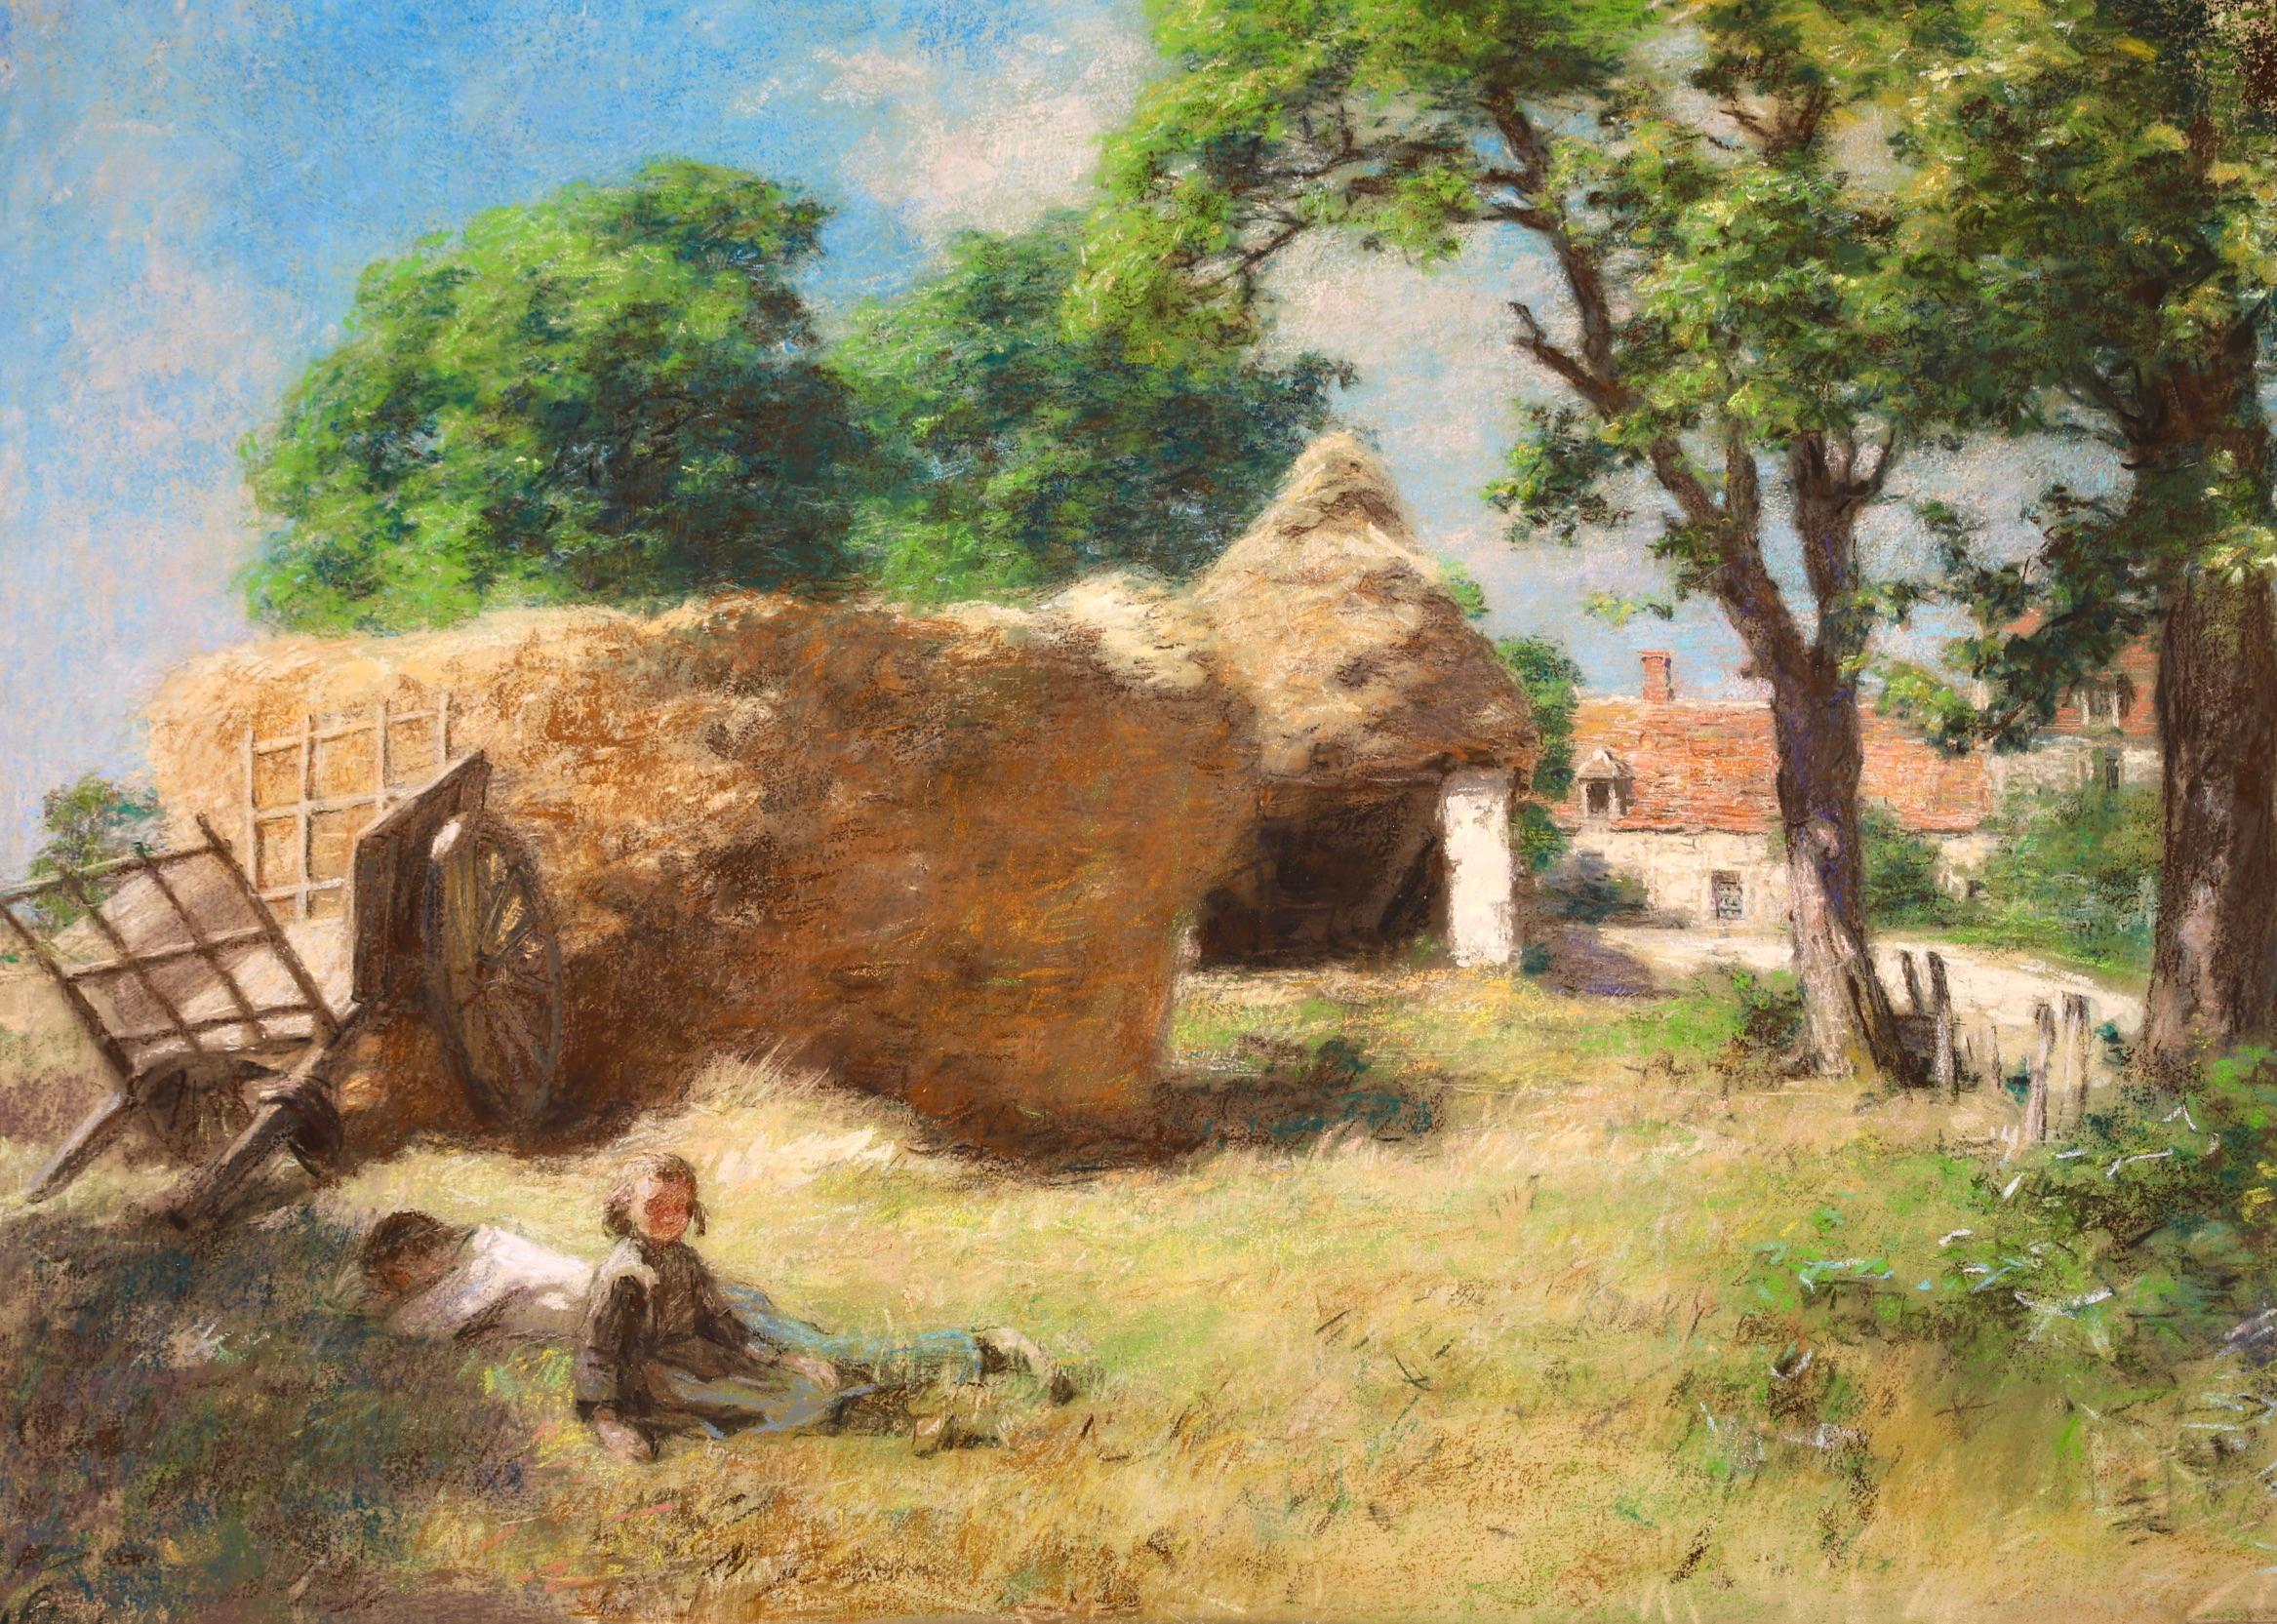 Le repos des le moissonneurs – Barbizon, figuratives Pastell von Leon Lhermitte – Painting von Léon Augustin Lhermitte